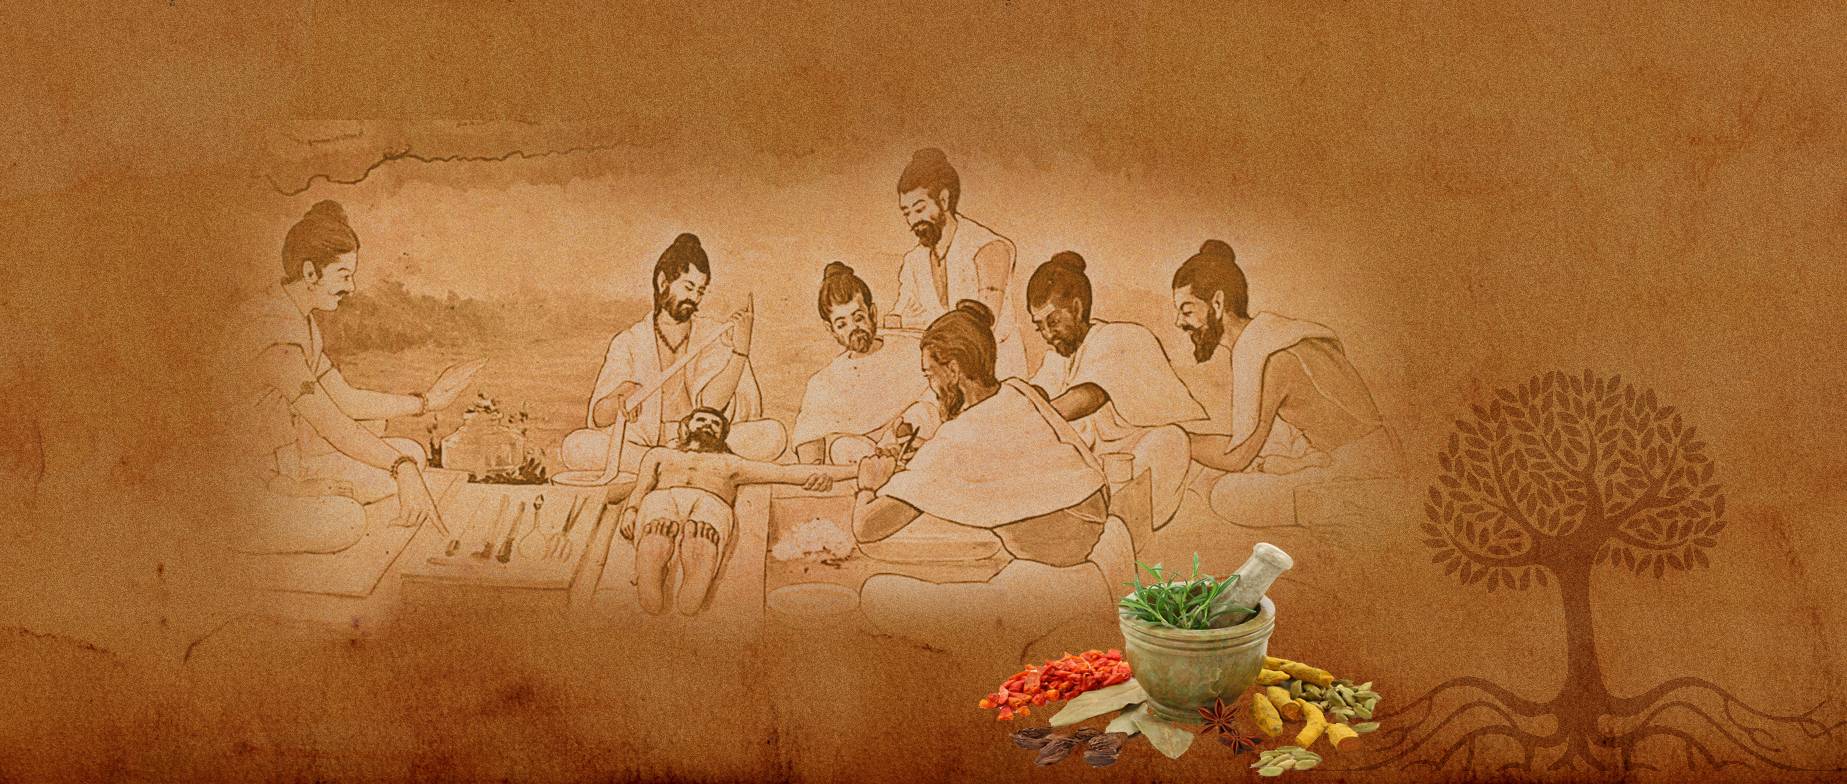 Аюрведа - индийская наука о здоровом образе жизни. основные принципы и термины